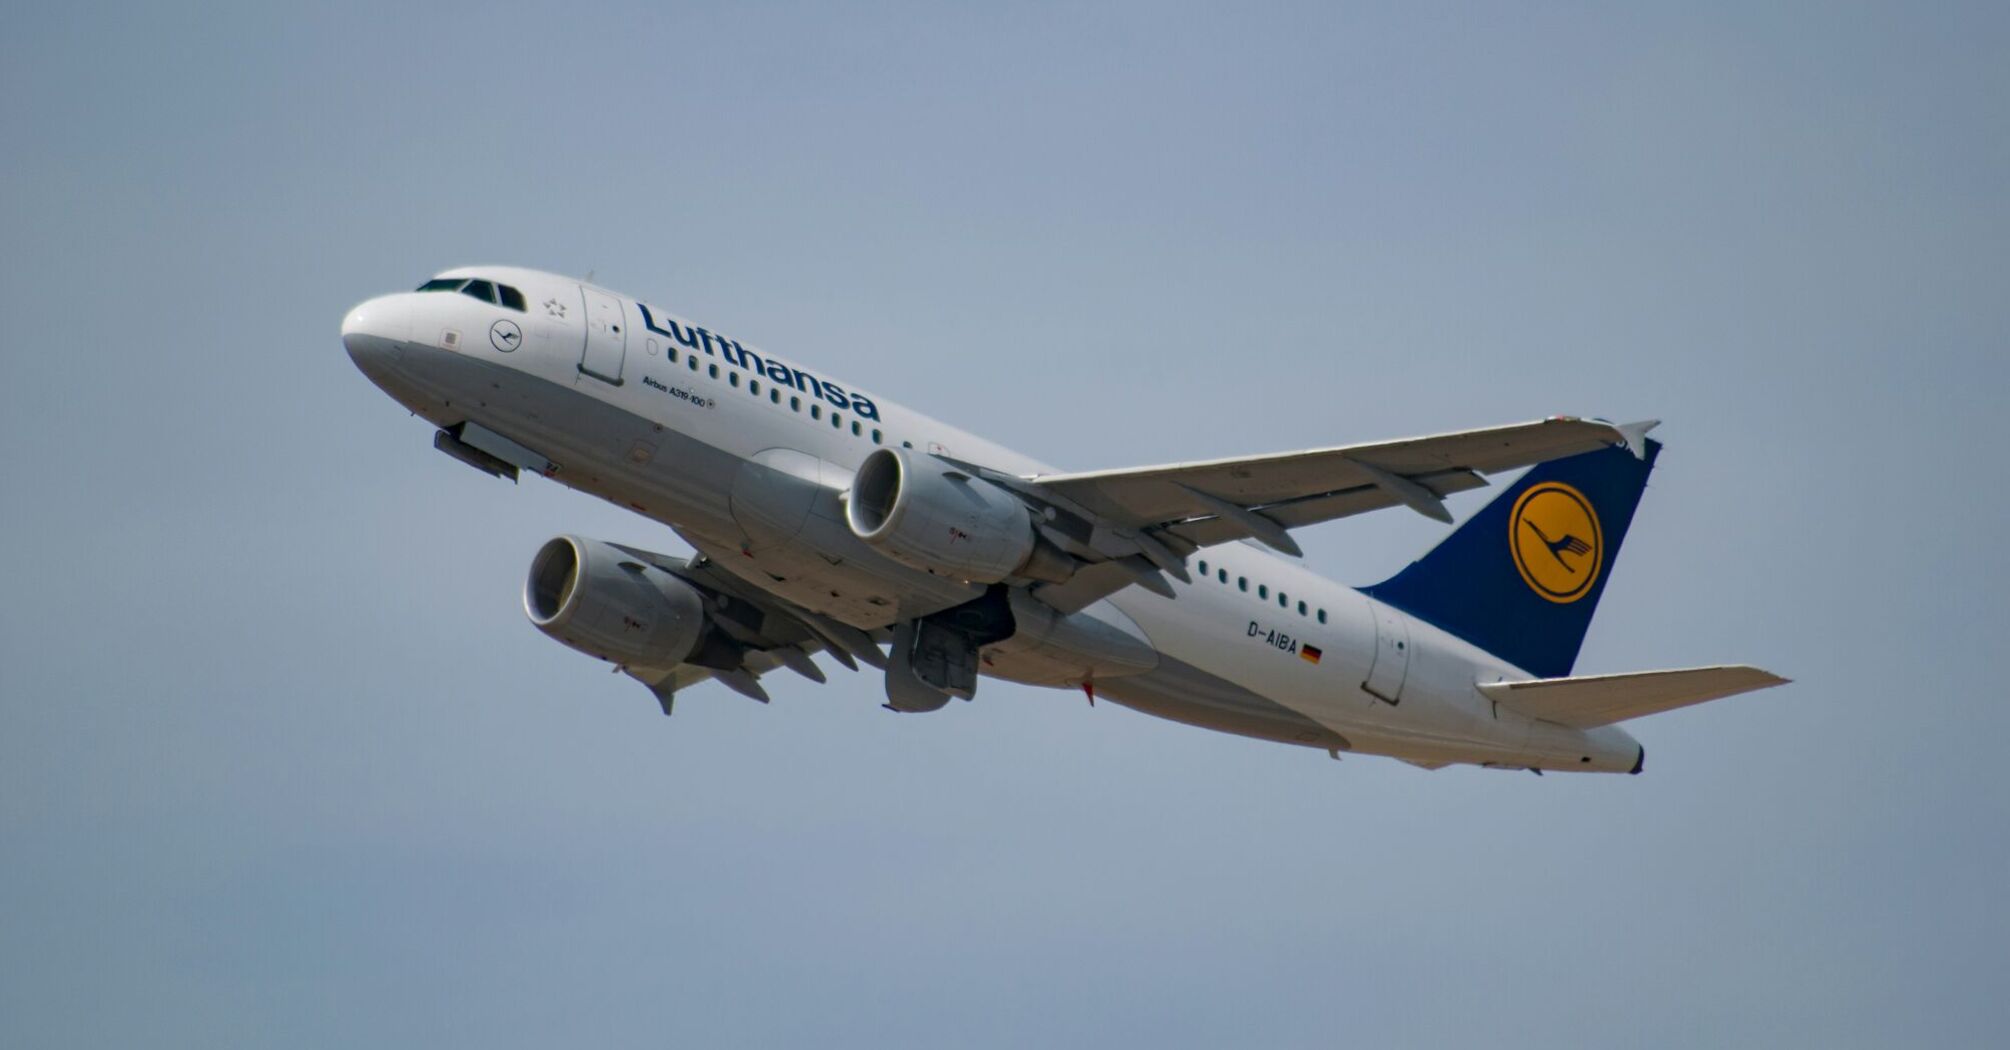 Lufthansa's plane in the air